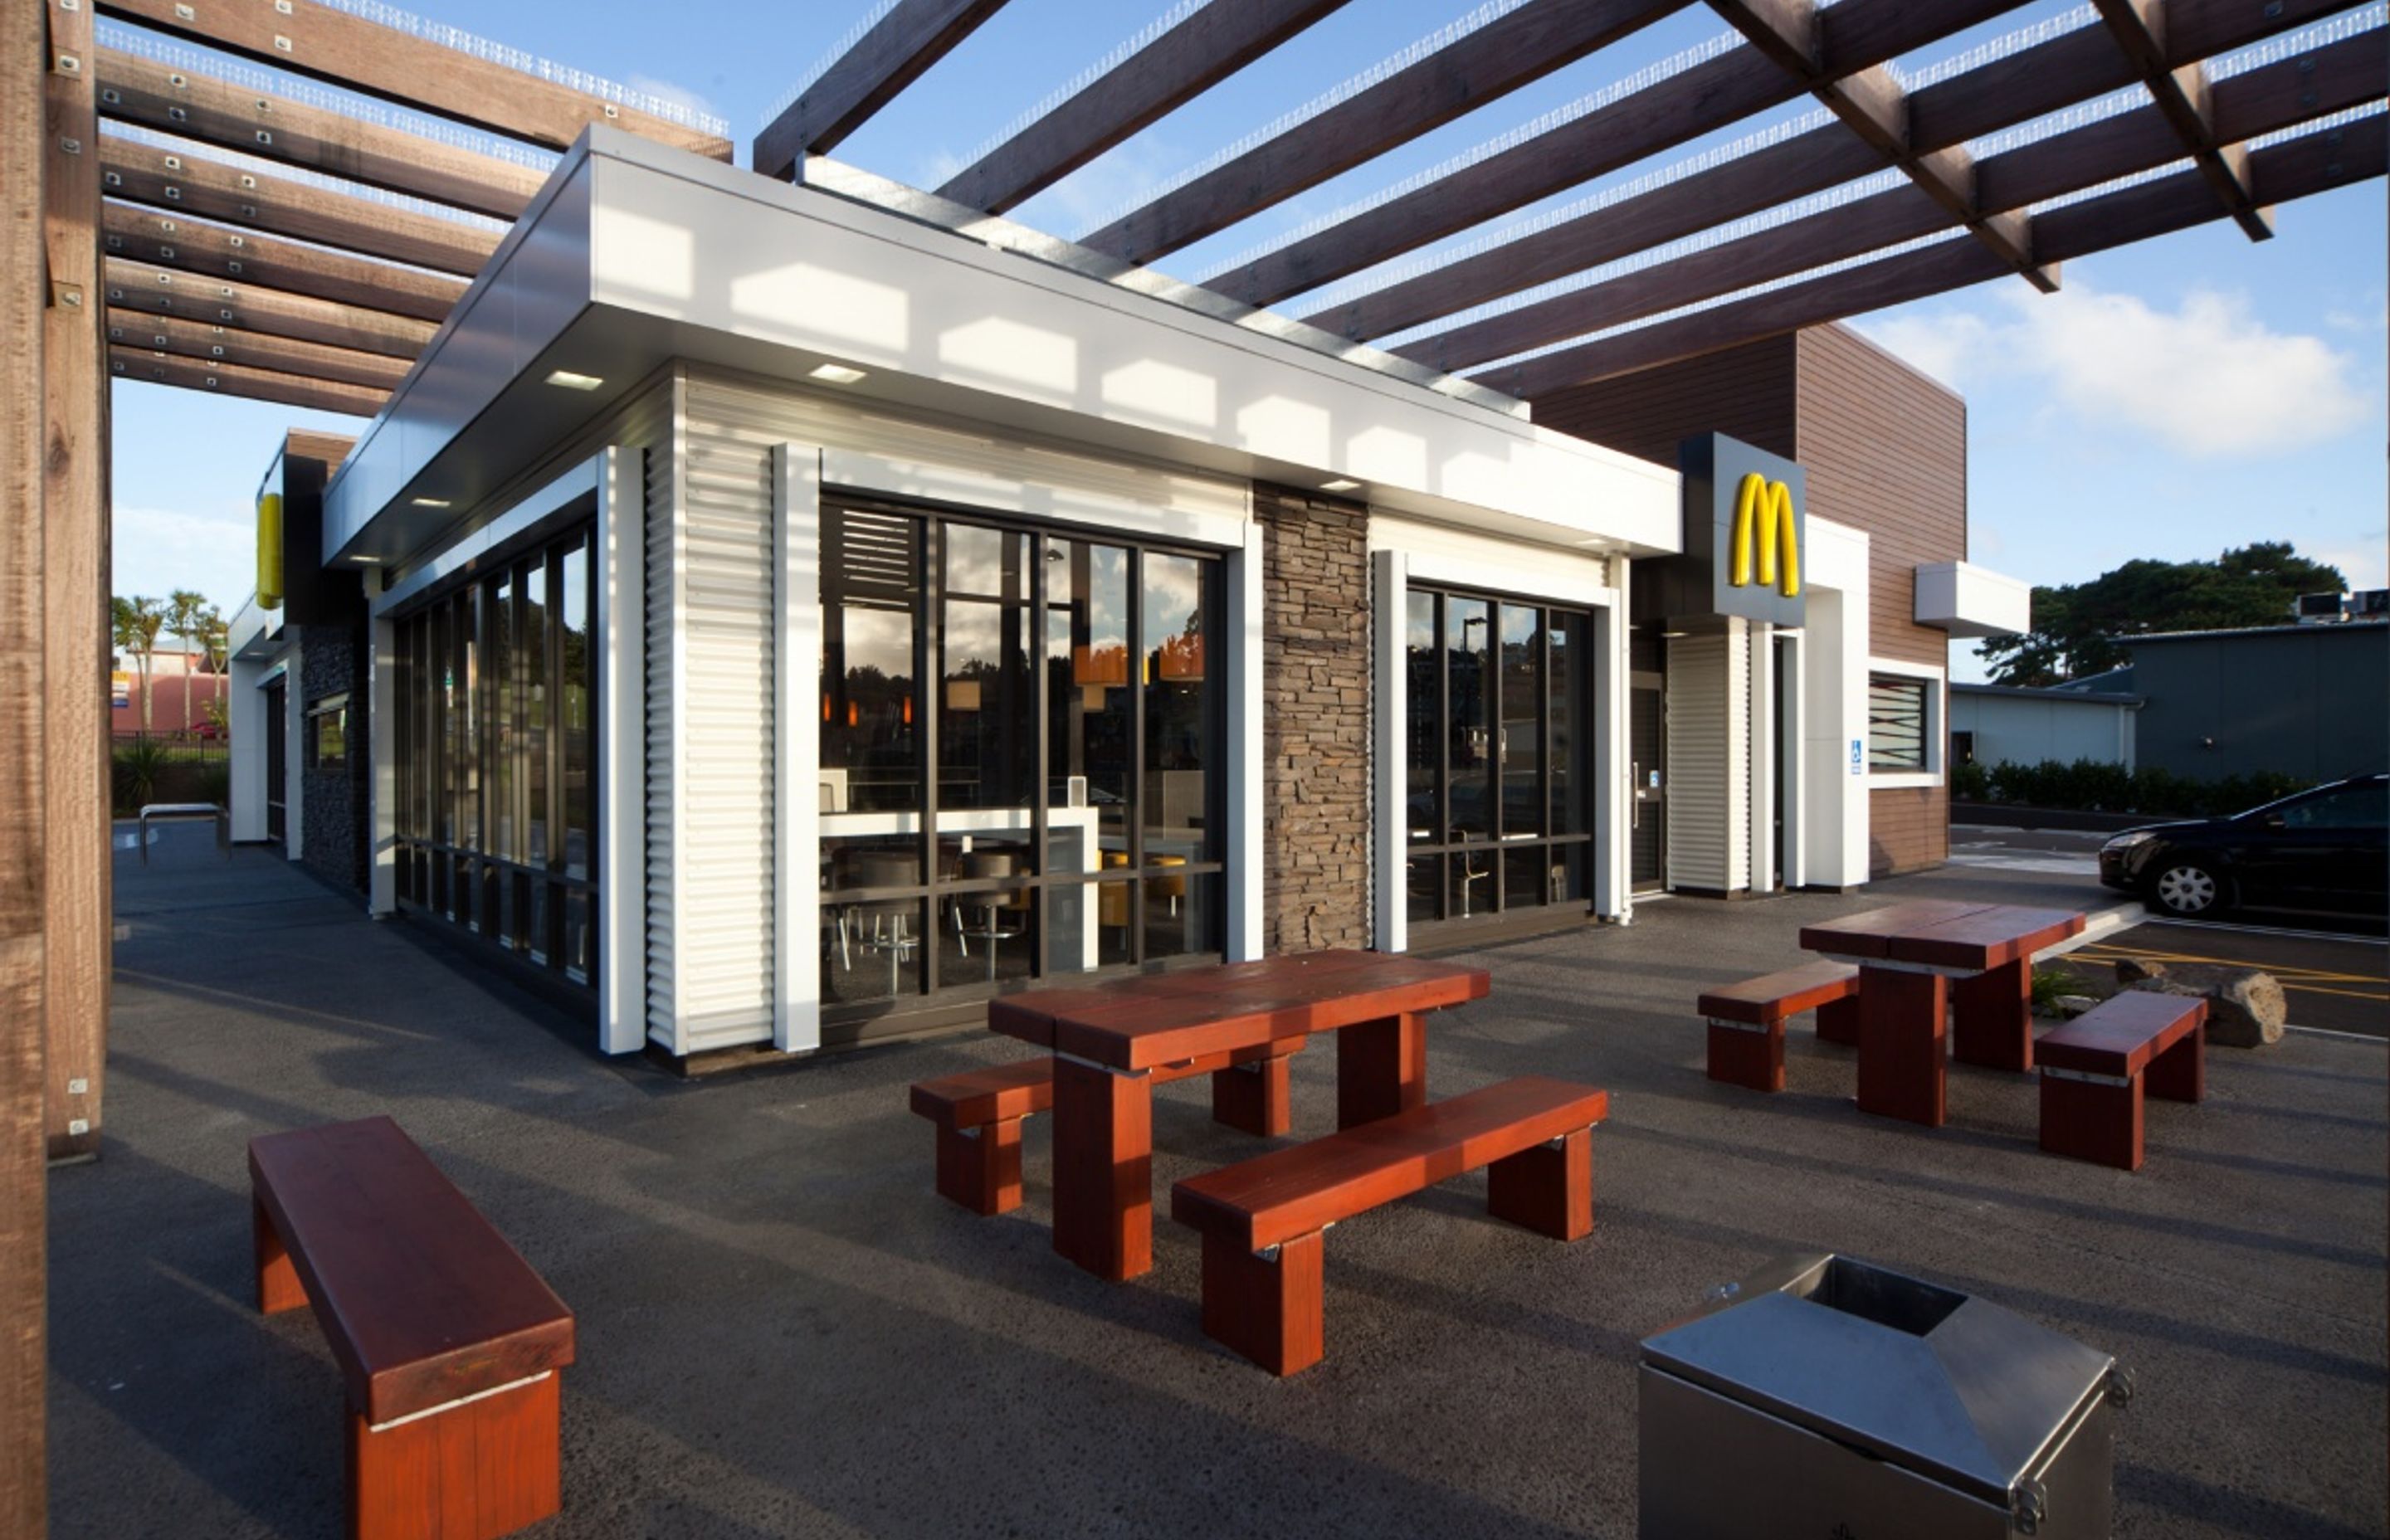 McDonald's Whangaparoa